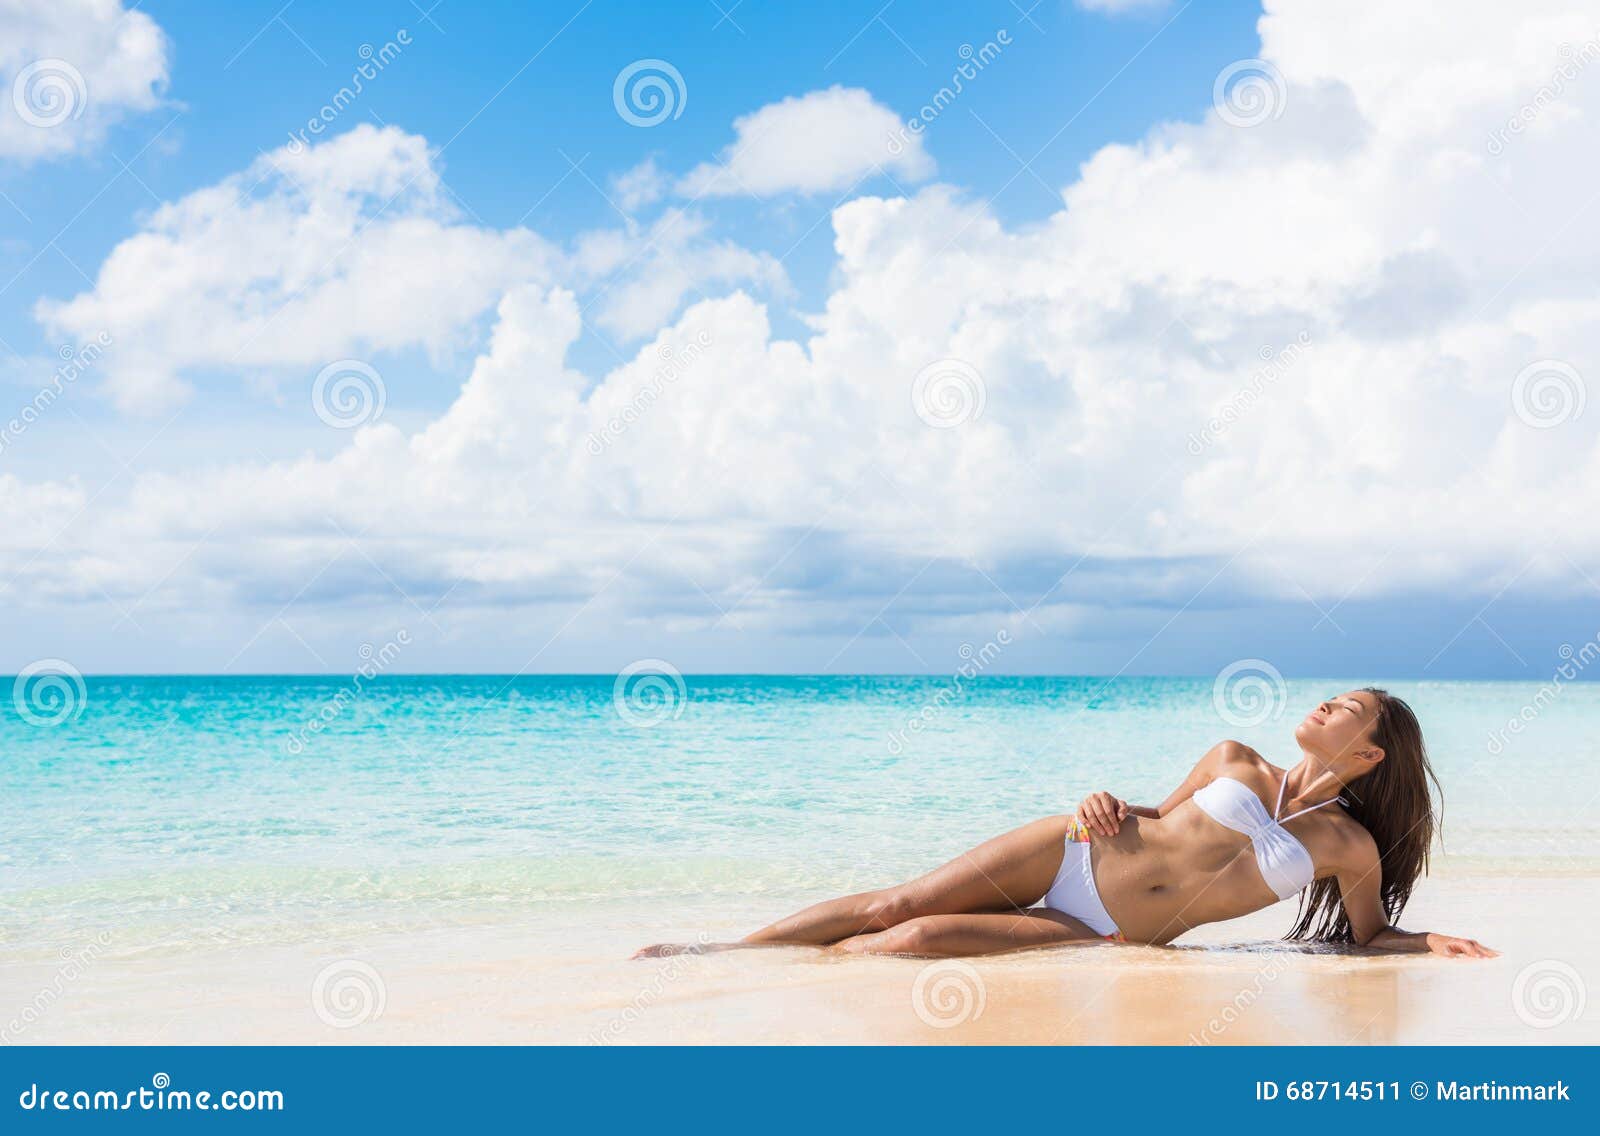 Beach Bikini Body Woman Relaxing Sun Tanning Stock Image Image Of